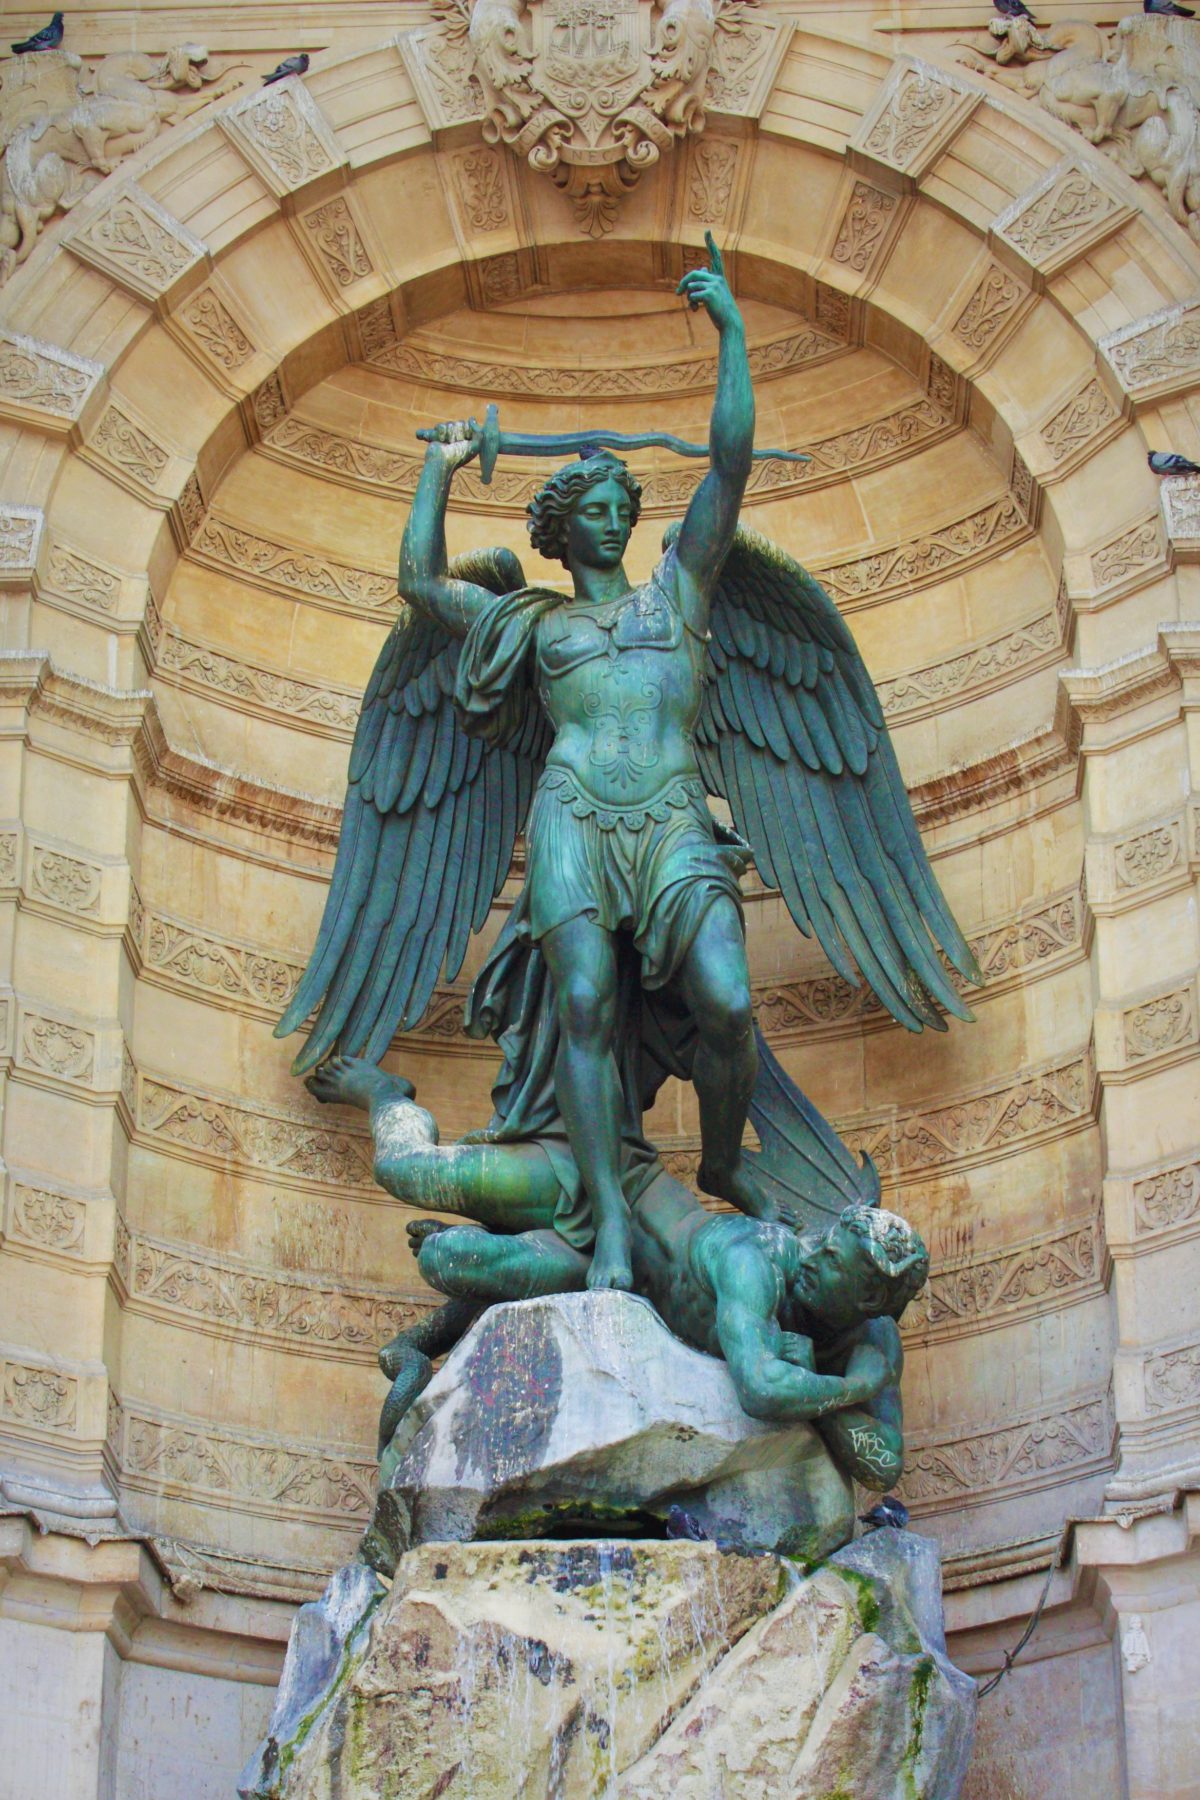 Rzeźba anioła schowa w niszy jednego z paryskich zabytków